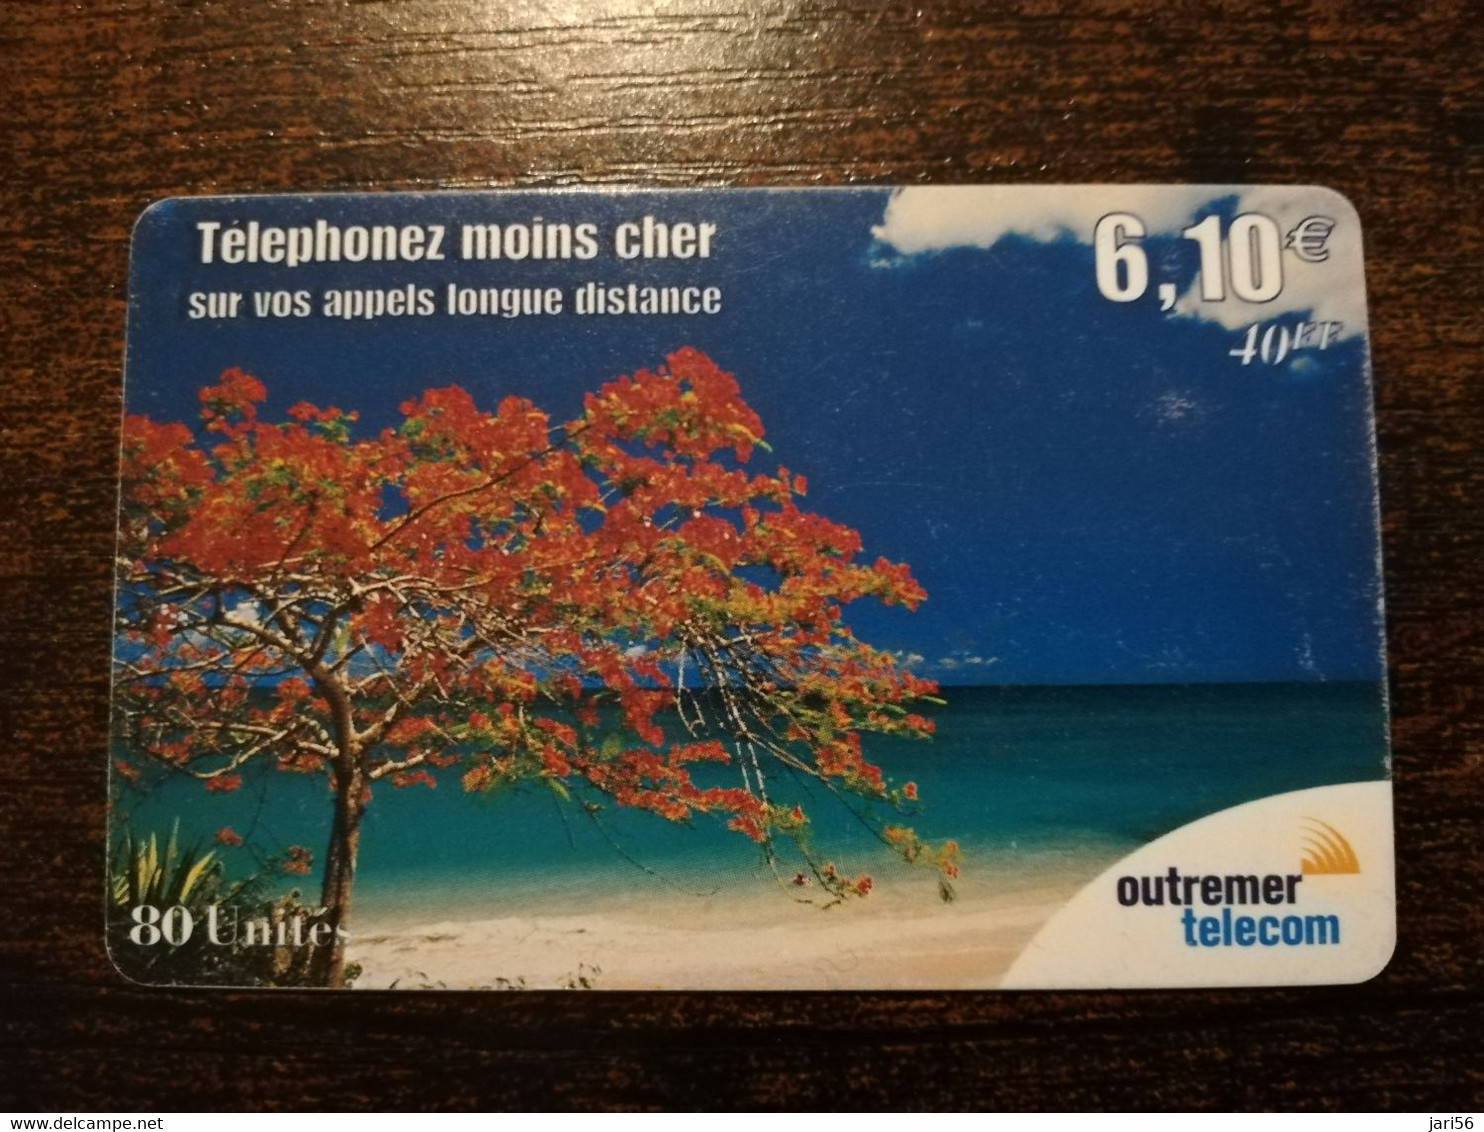 Phonecard St Martin French OUTREMER TELECOM   THREE ON BEACH   6,10 EURO  ** 6323 ** - Antillen (Französische)